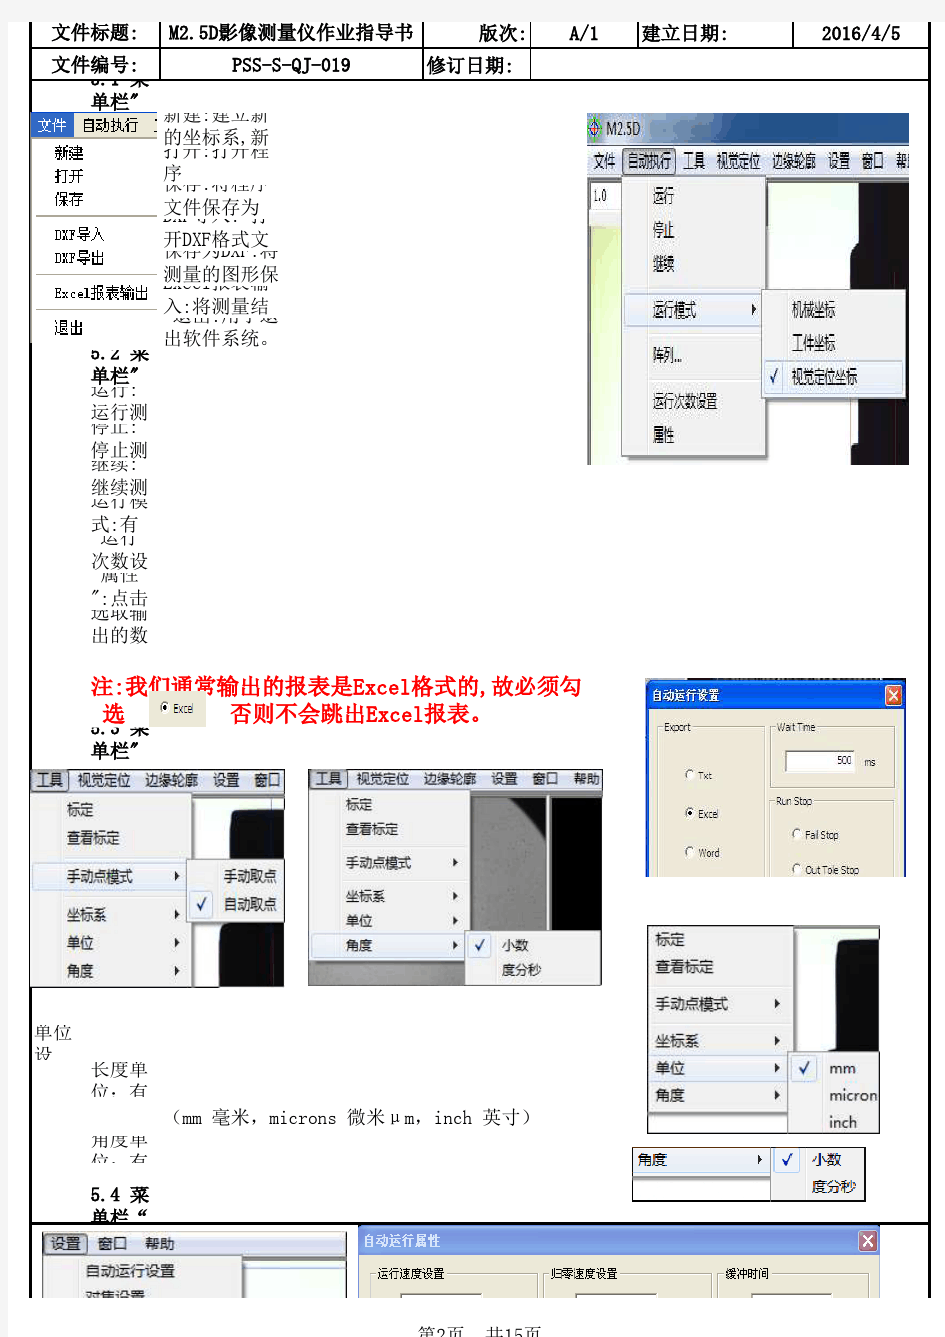 M2.5D影像测量仪作业指导书